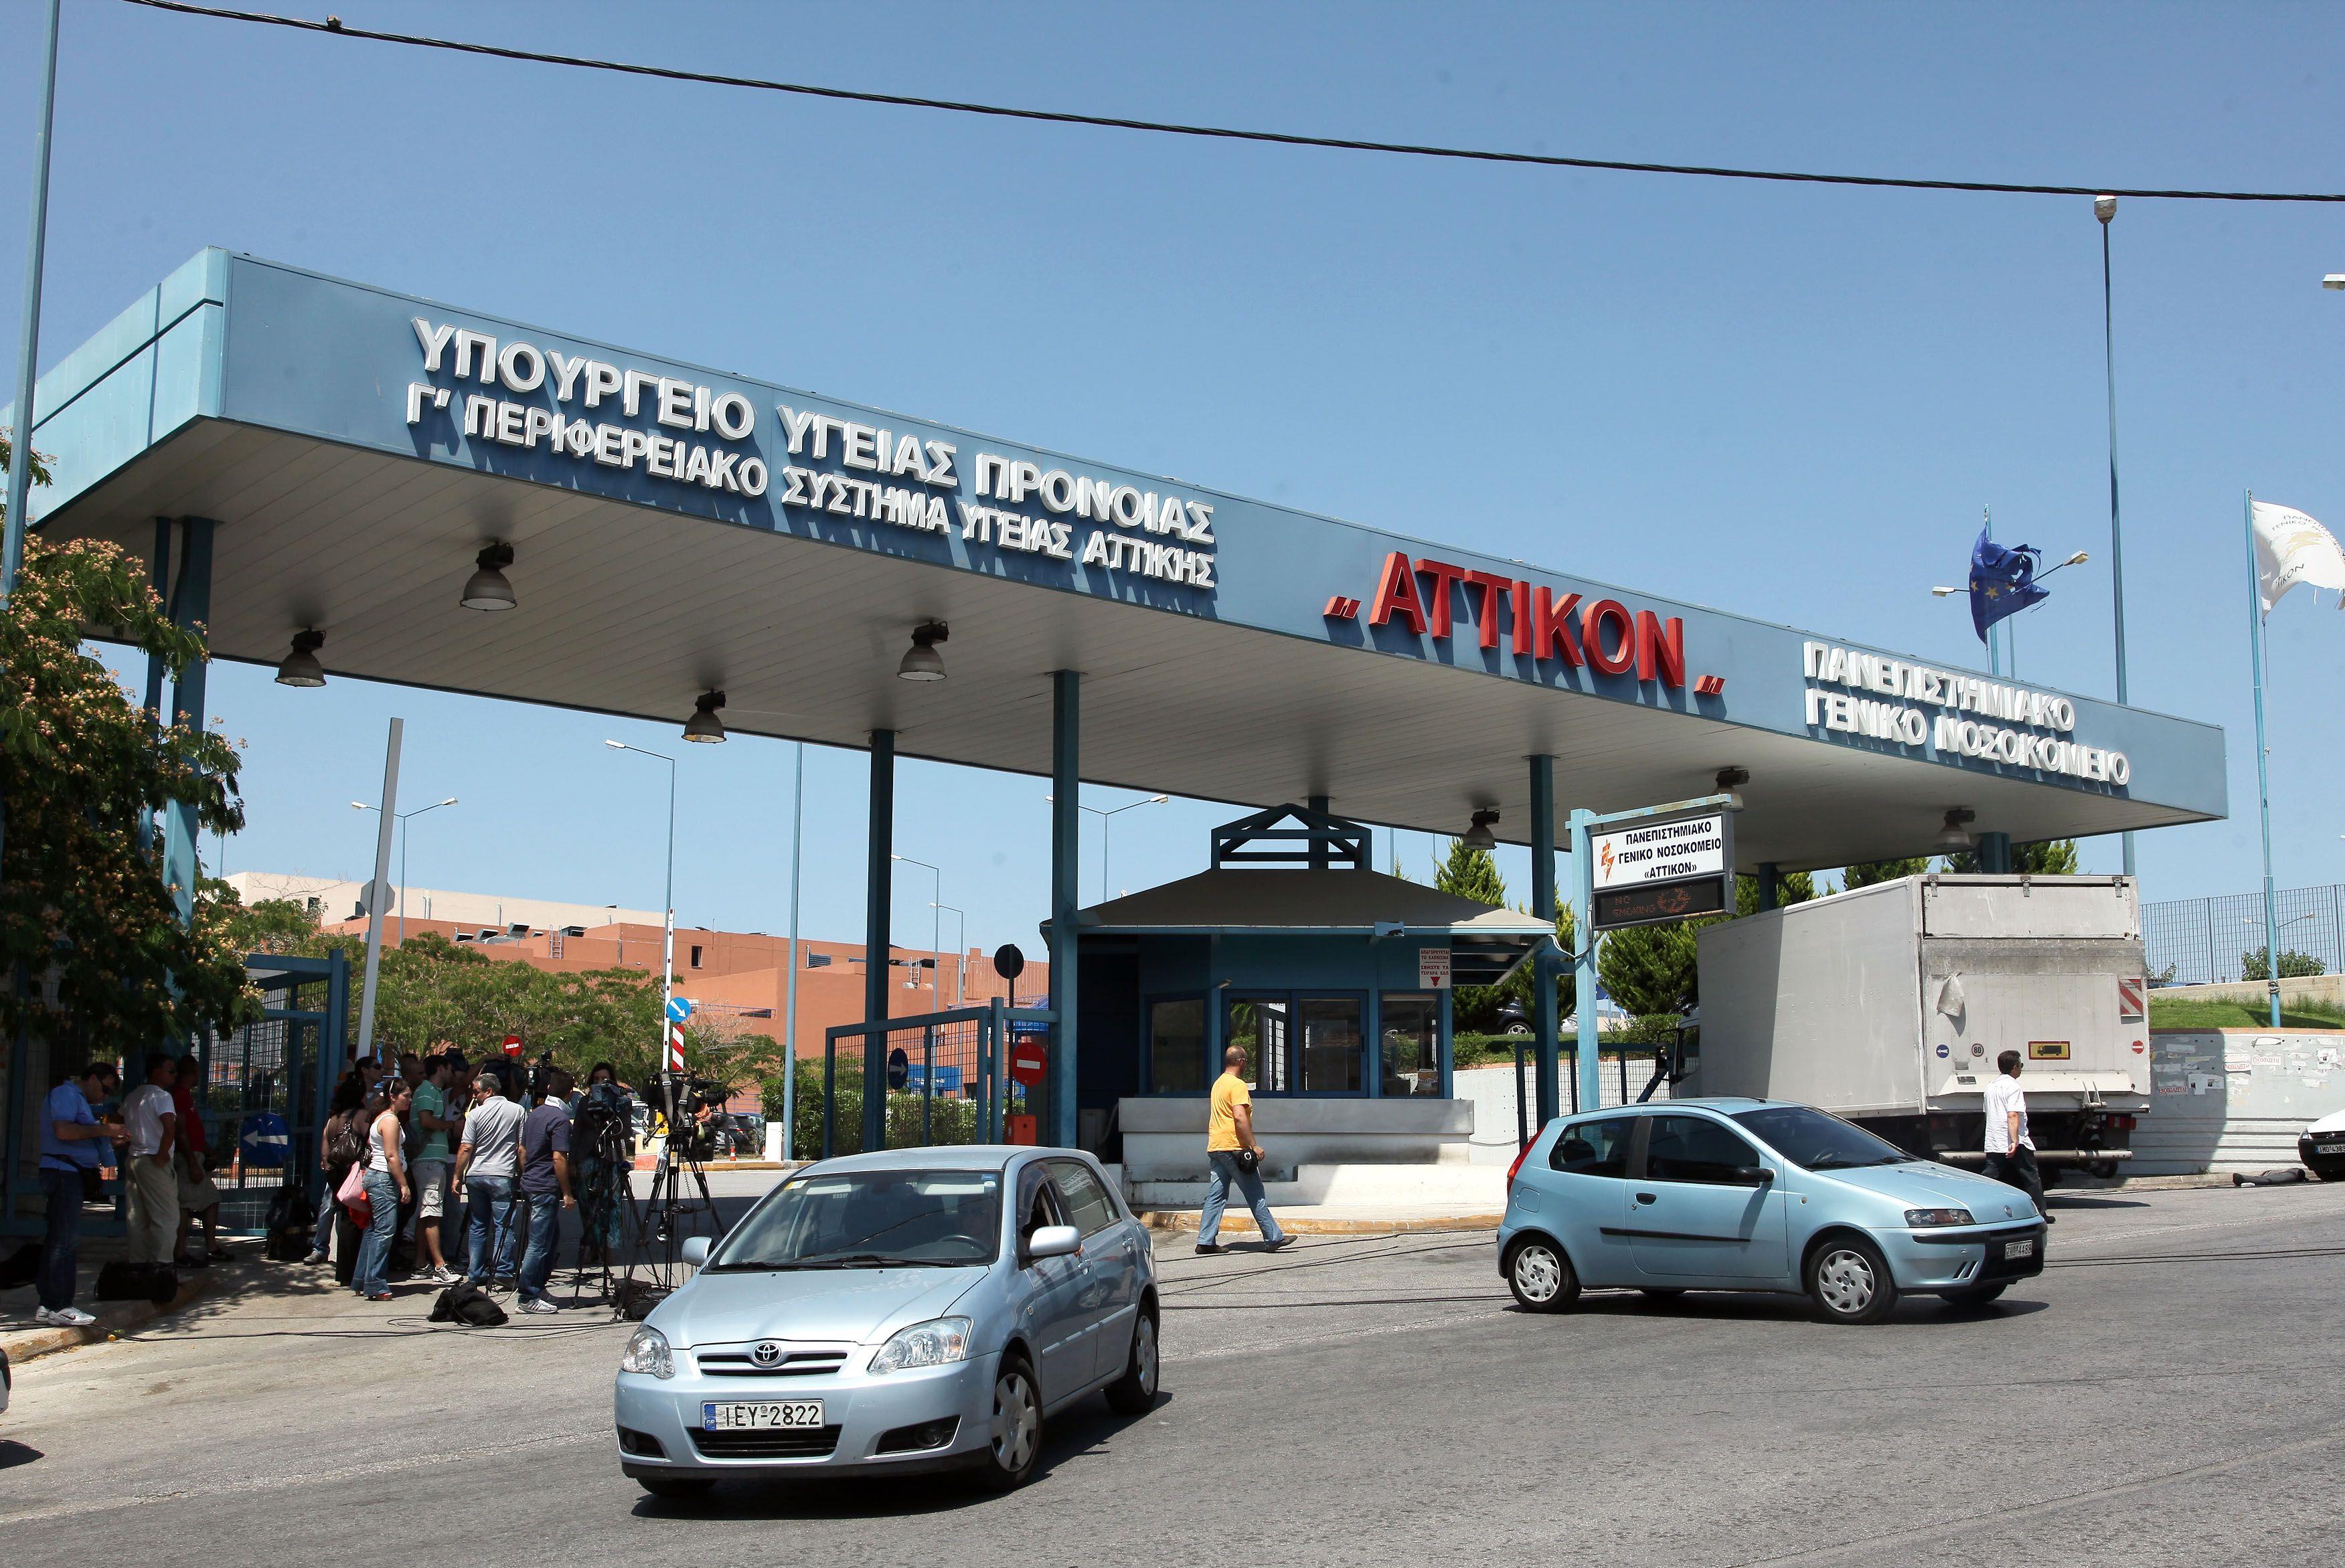 Κλειστά λόγω κινητοποίησης τα εξωτερικά ιατρεία του Αττικού Νοσοκομείου